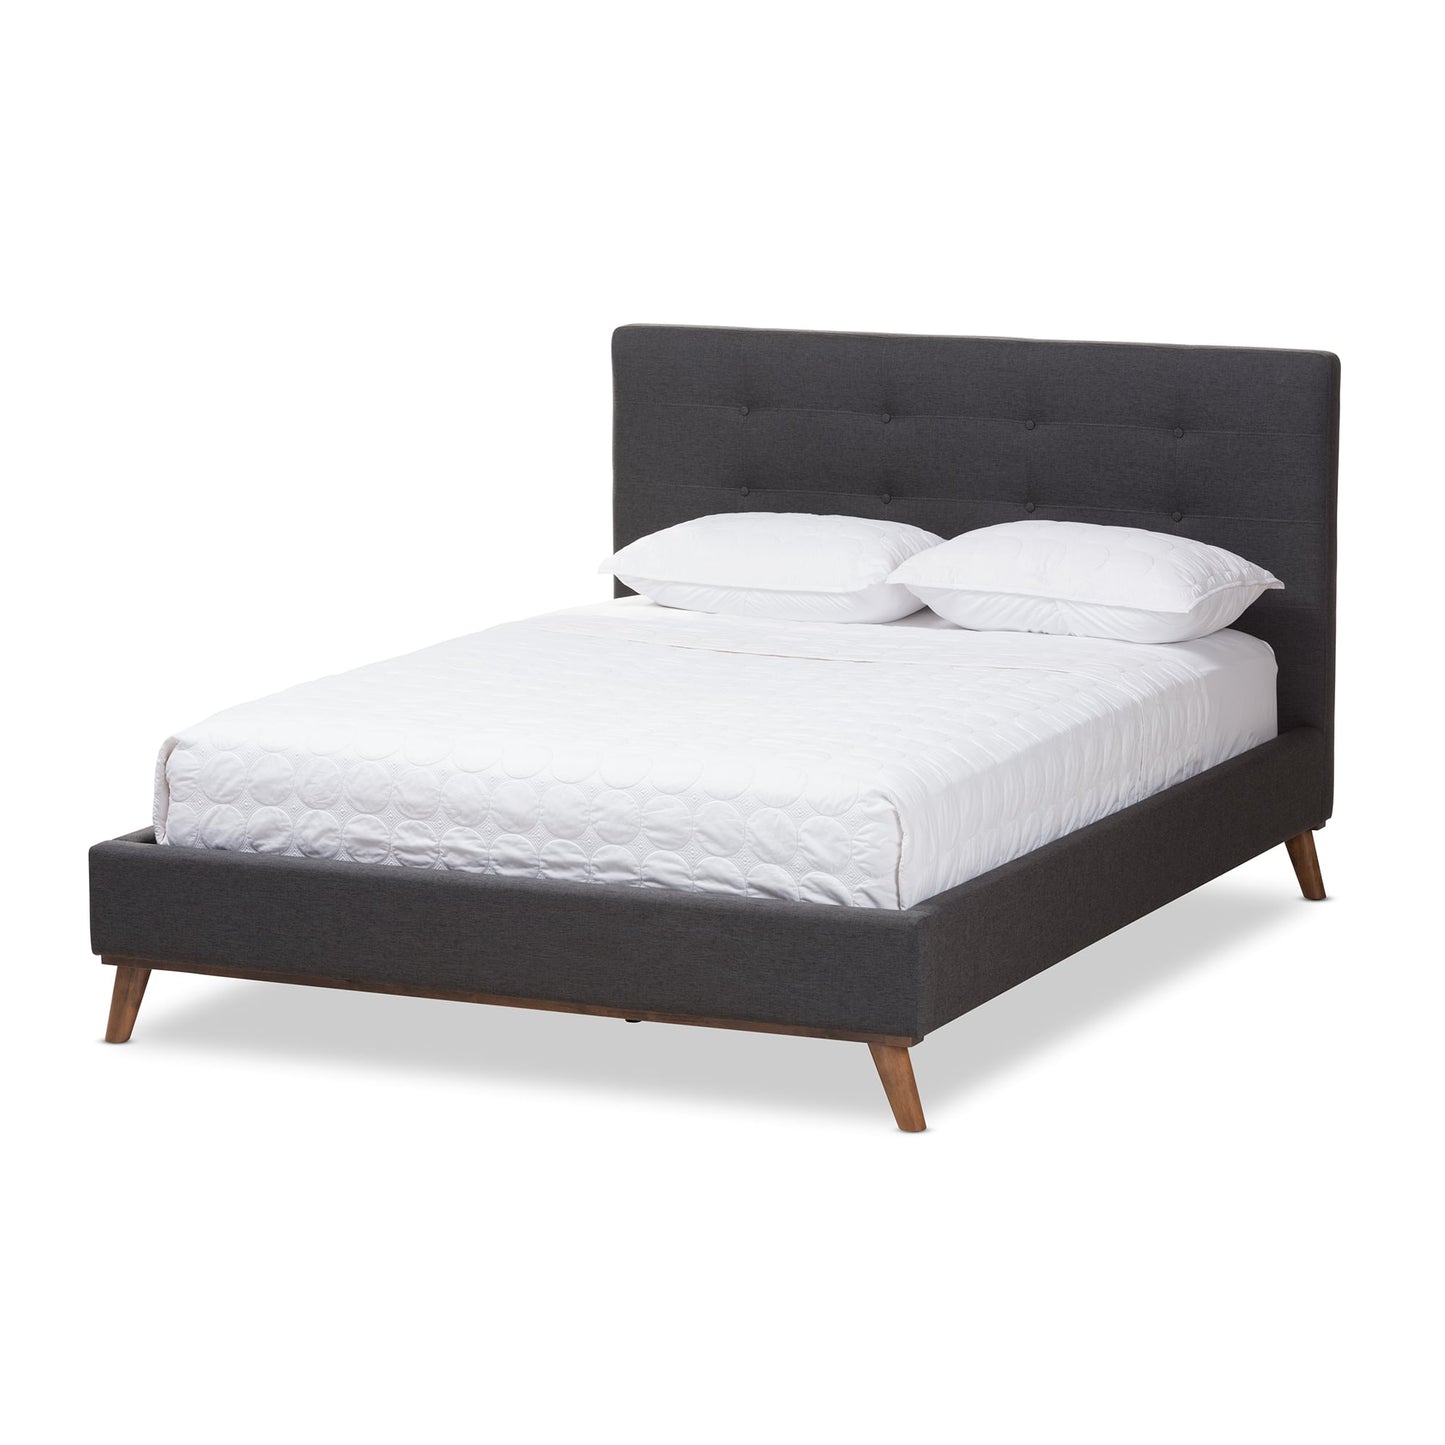 baxton studio valencia mid century modern dark grey fabric queen size platform bed | Modish Furniture Store-12